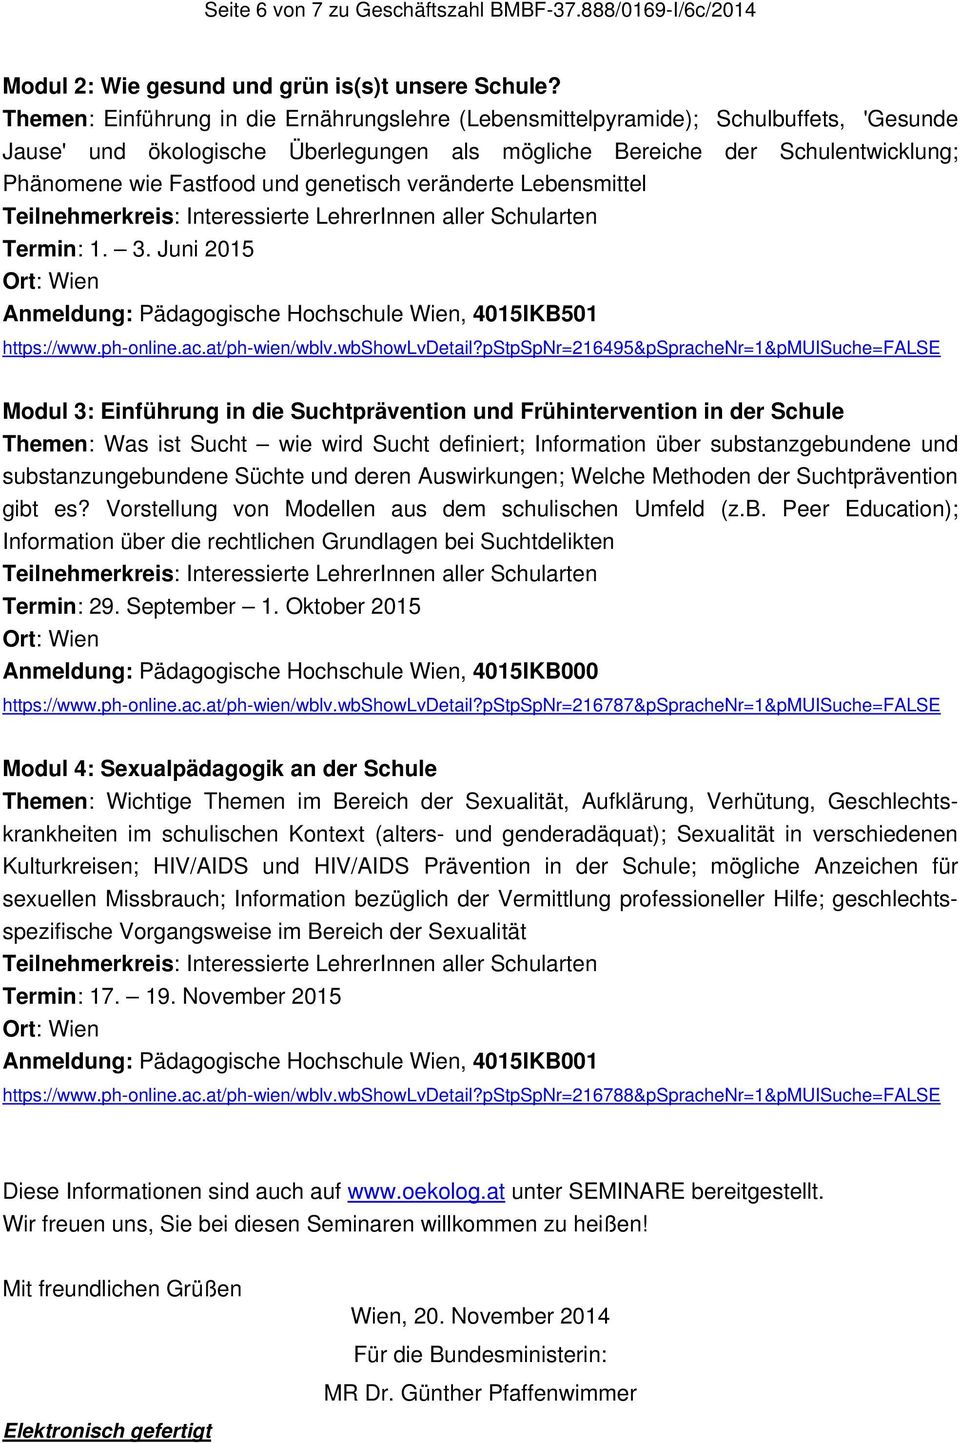 genetisch veränderte Lebensmittel Termin: 1. 3. Juni 2015 Anmeldung: Pädagogische Hochschule Wien, 4015IKB501 https://www.ph-online.ac.at/ph-wien/wblv.wbshowlvdetail?